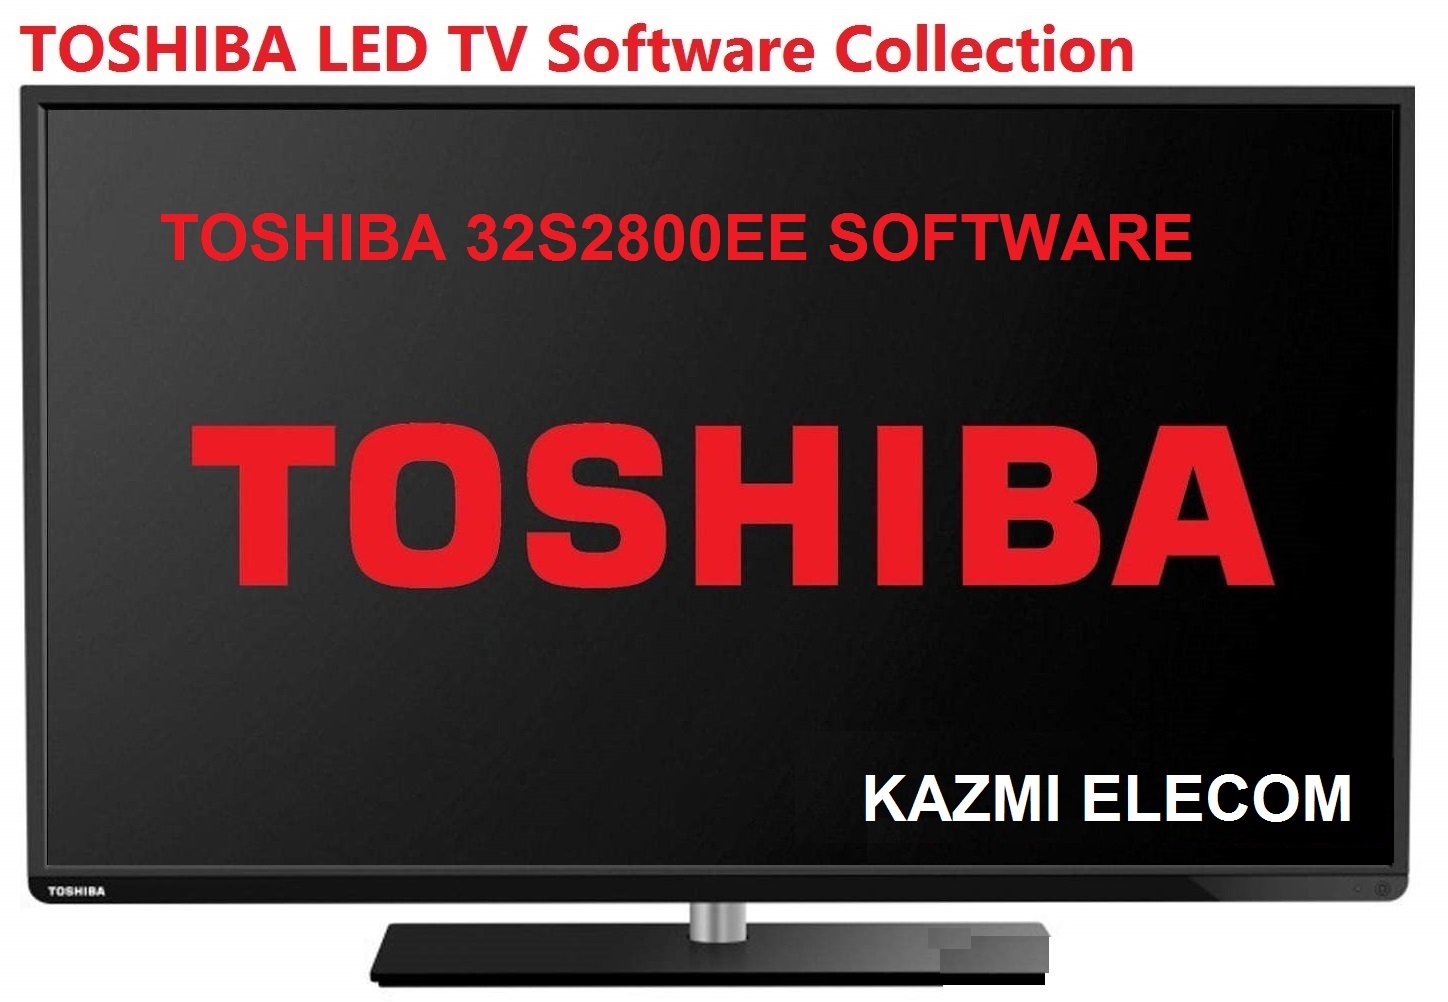 Toshiba 32S2800Ee